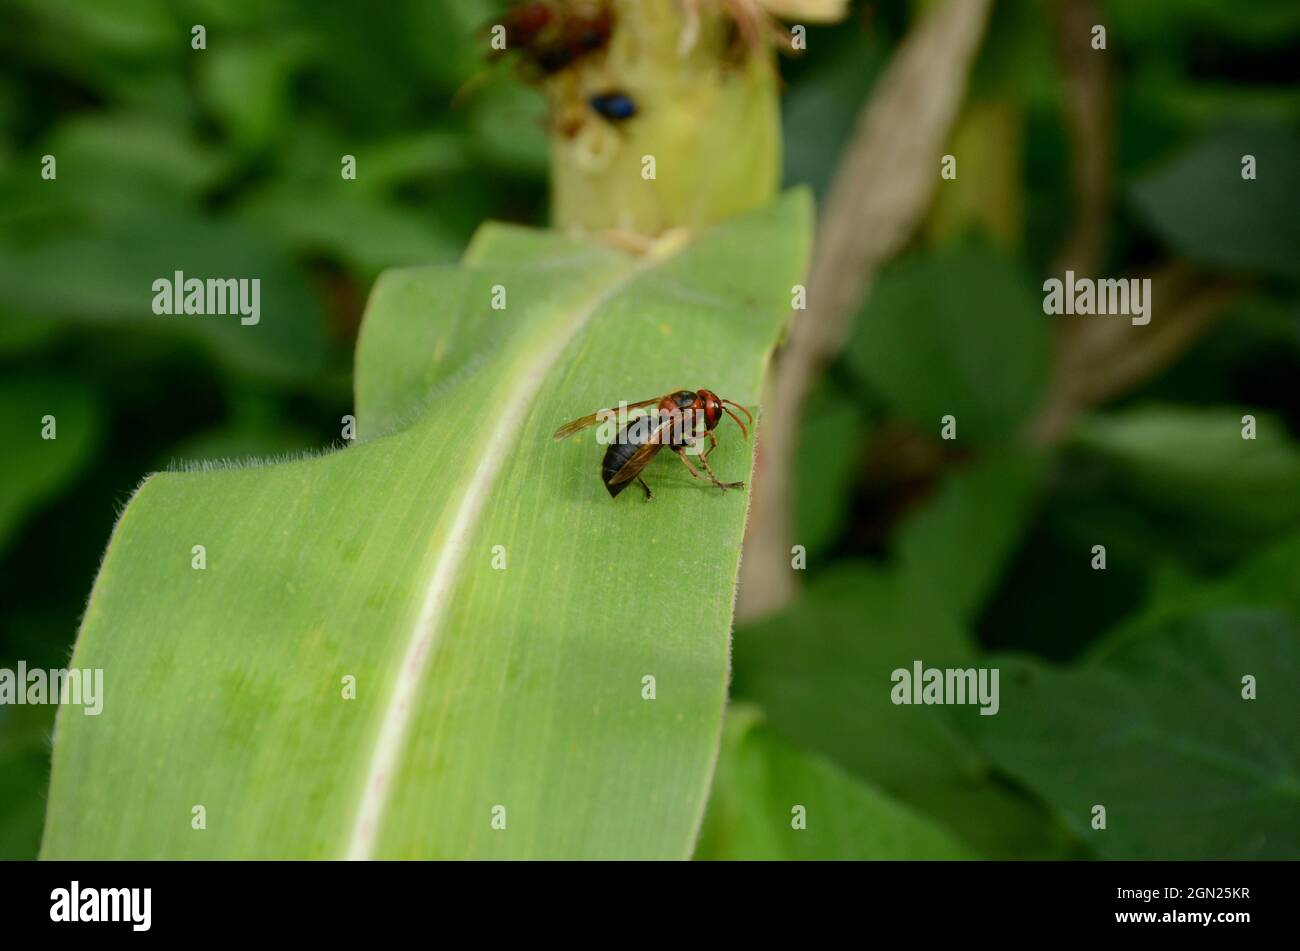 Nahaufnahme der orangefarbenen schwarzen Ameise Insekt halten auf Maiskolben Pflanzenblatt über unscharf grün braunen Hintergrund. Stockfoto